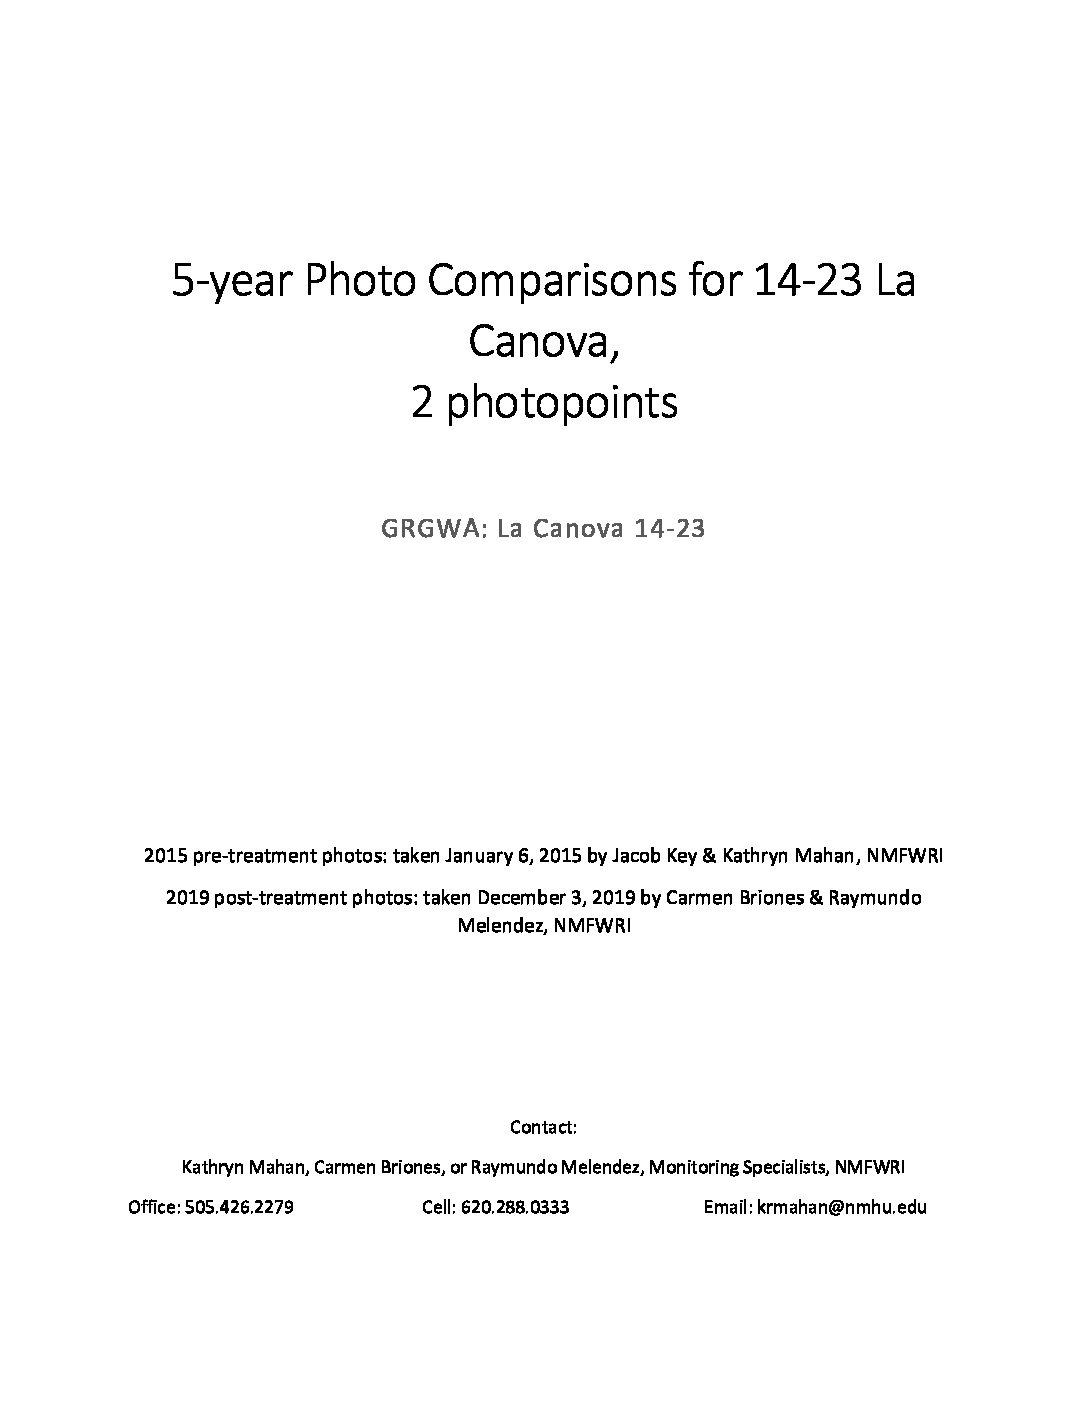 La Canova 14-23, 5 yr. Photo Comparisons 2015-2019